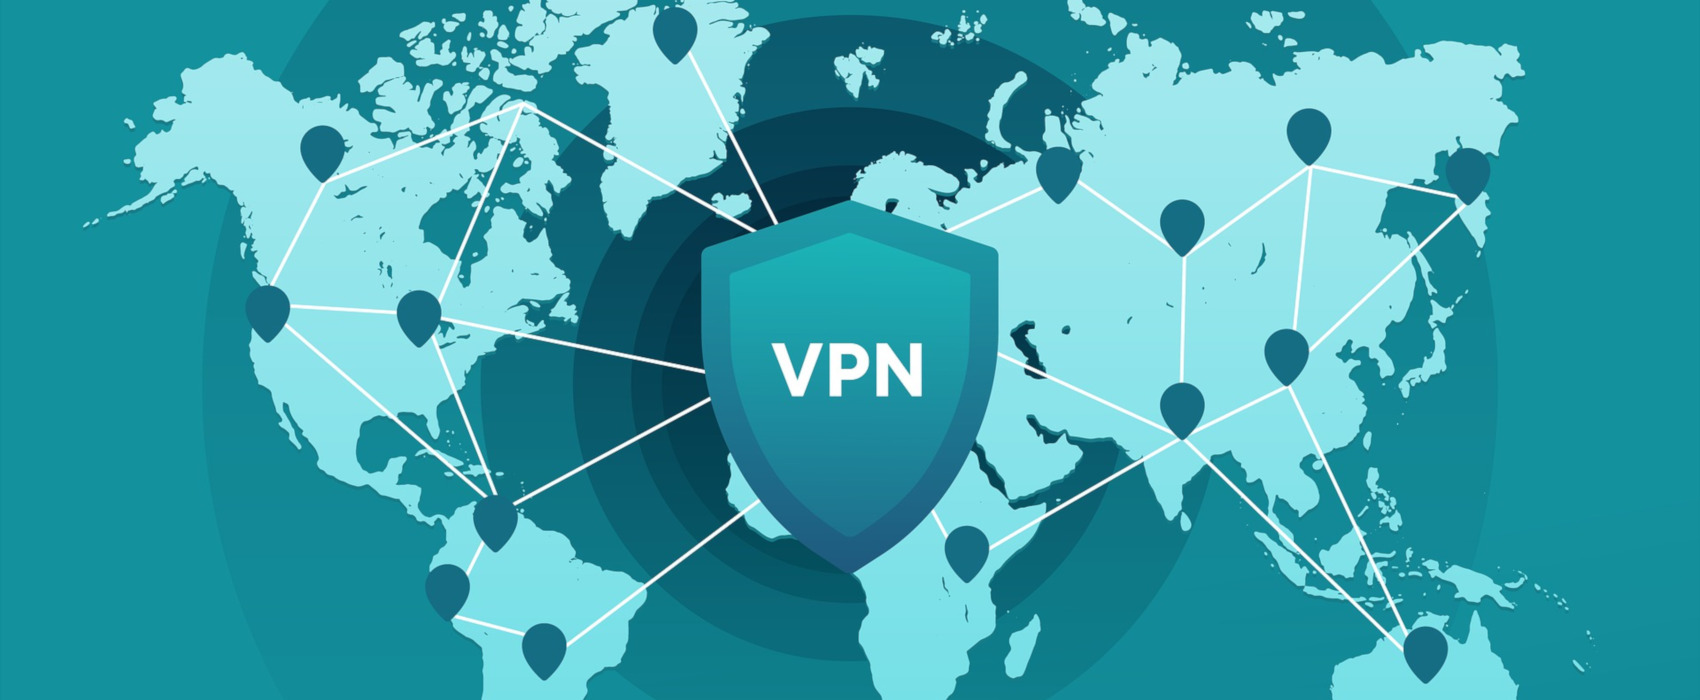 Profitez de 60 % de réduction sur votre abonnement VIPRE Internet Shield VPN